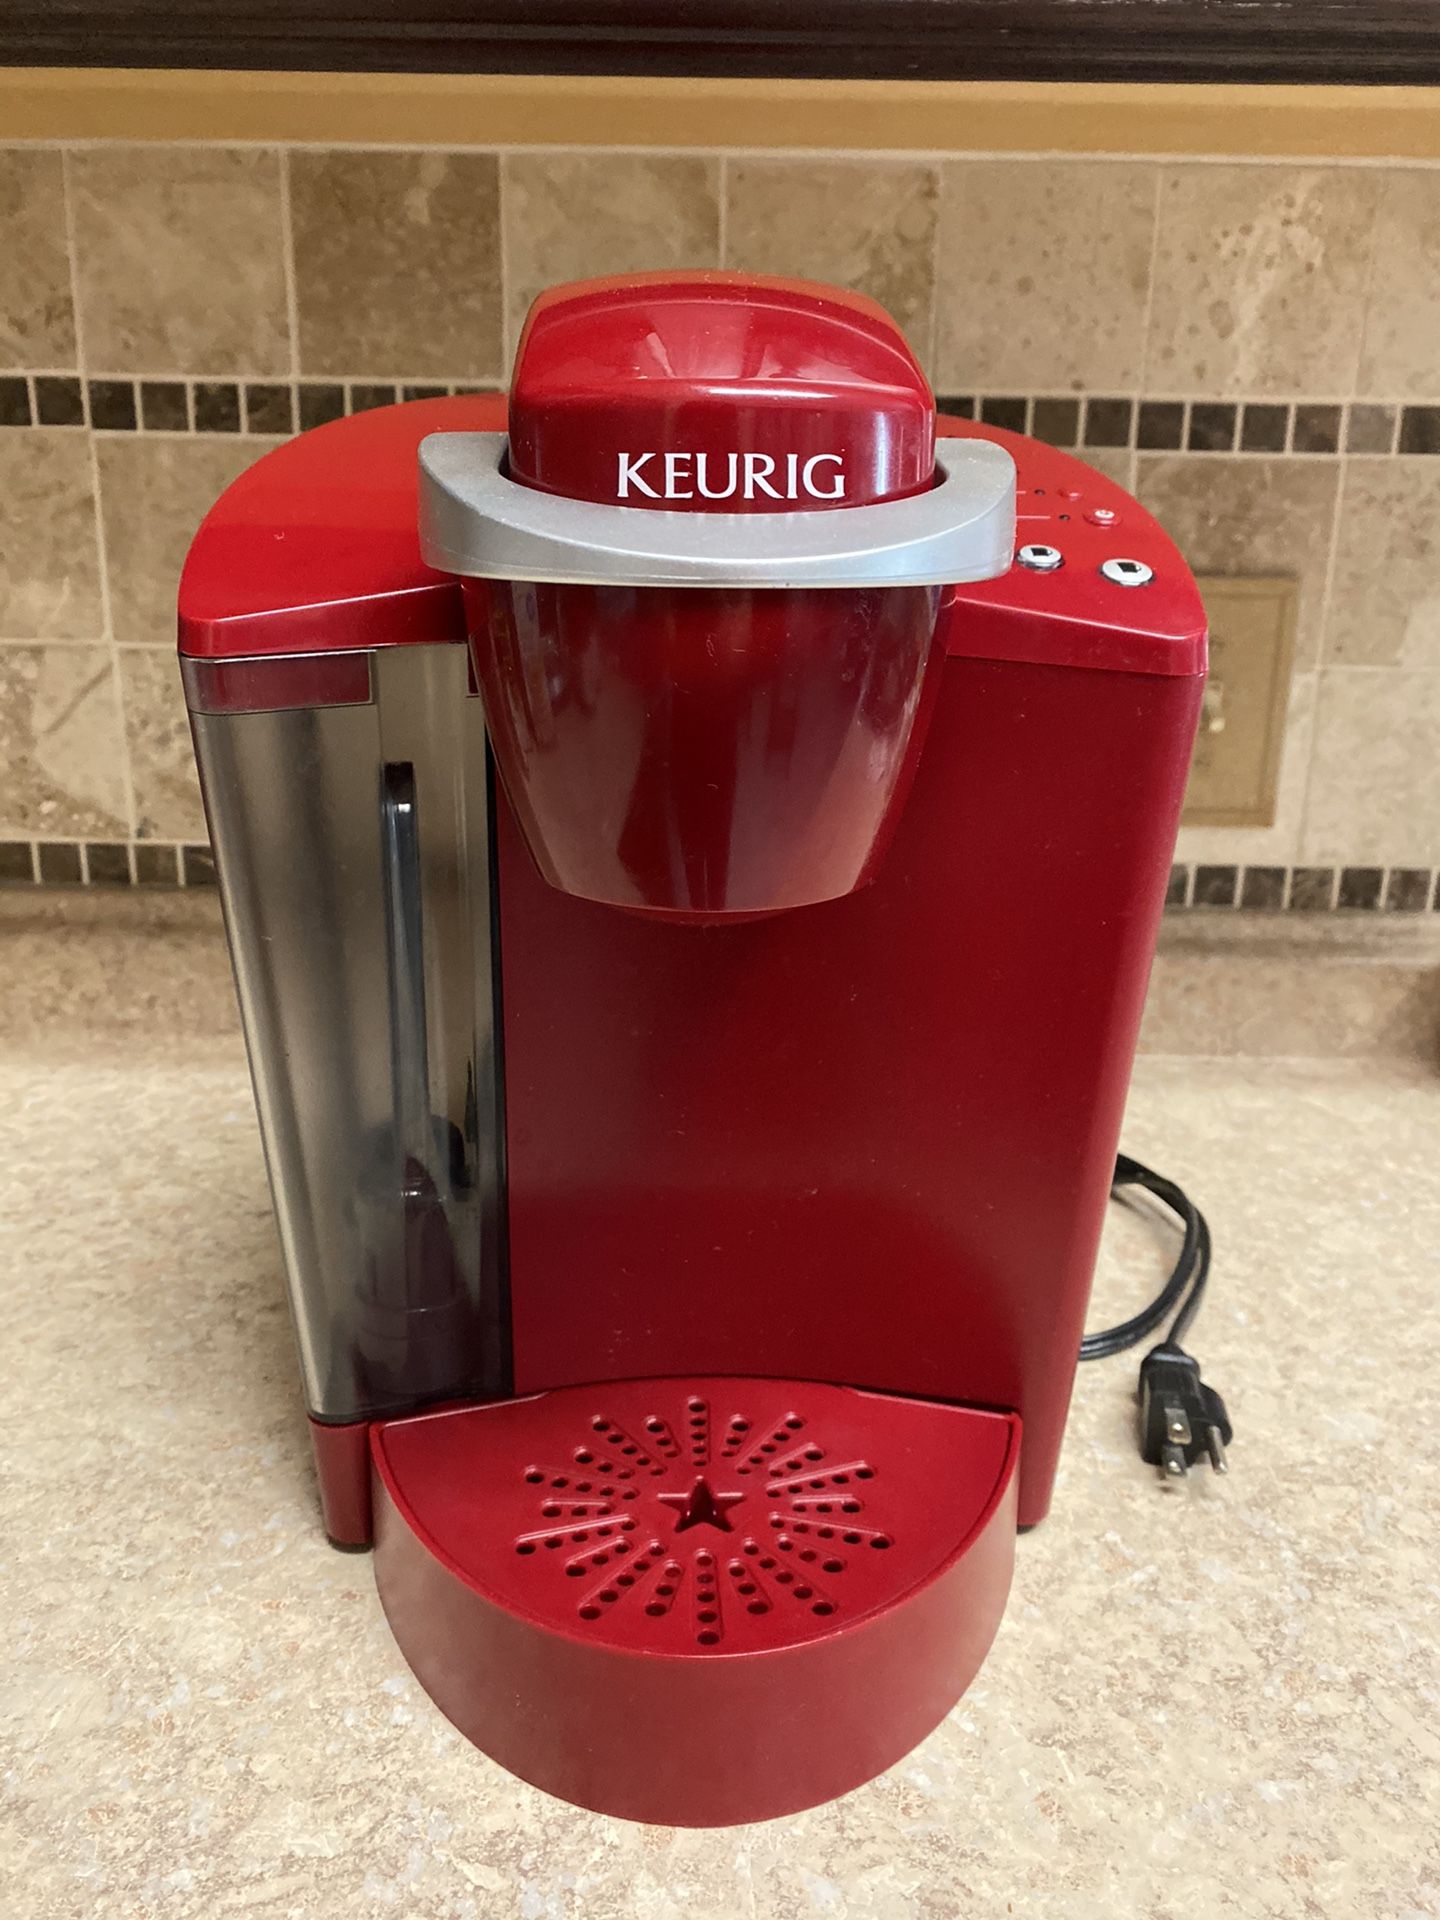 KEURIG K-Cup Coffee Maker